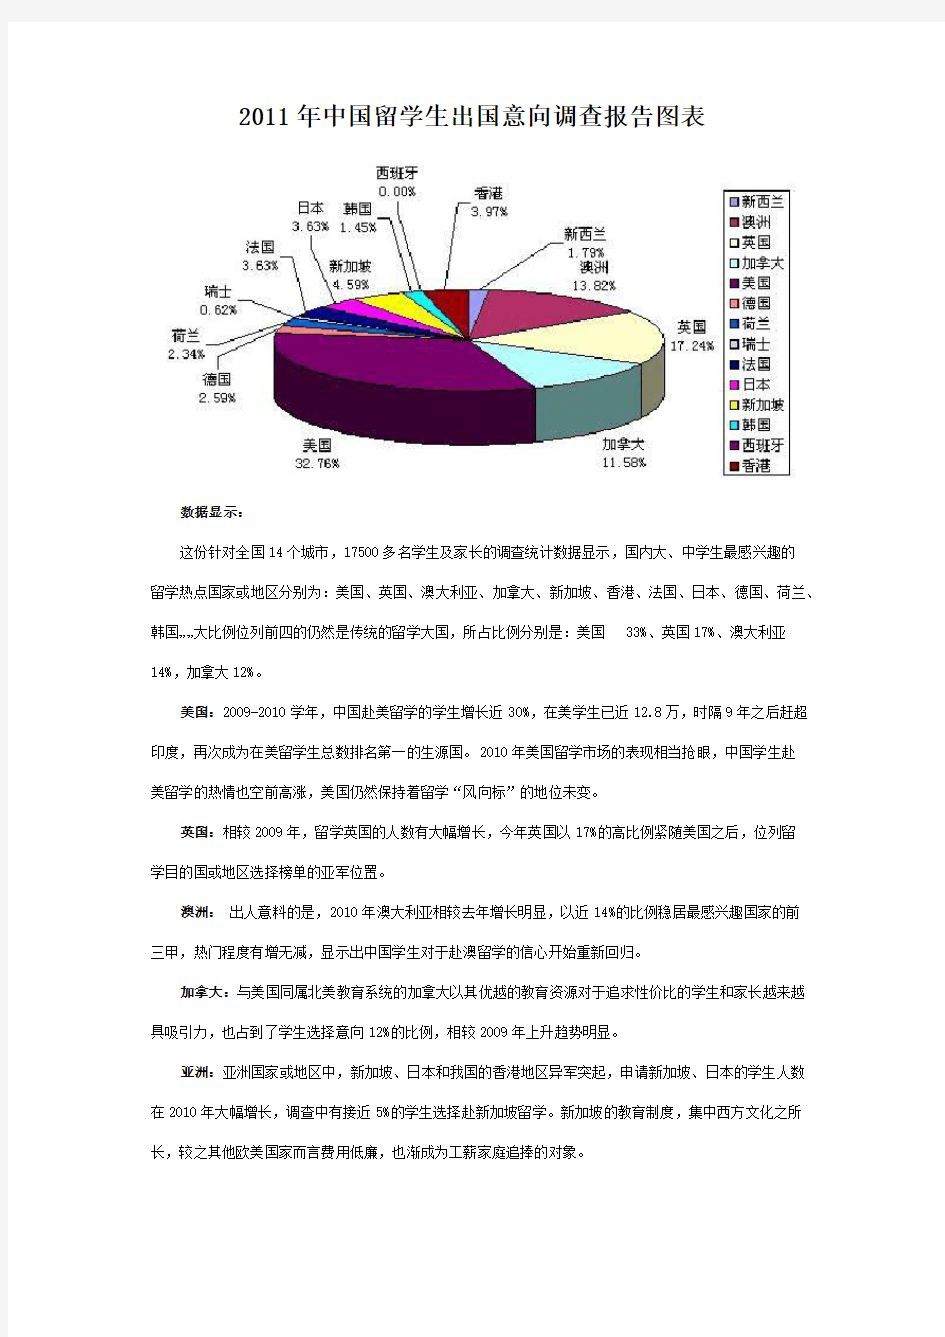 2011年中国留学生出国意向调查报告图表